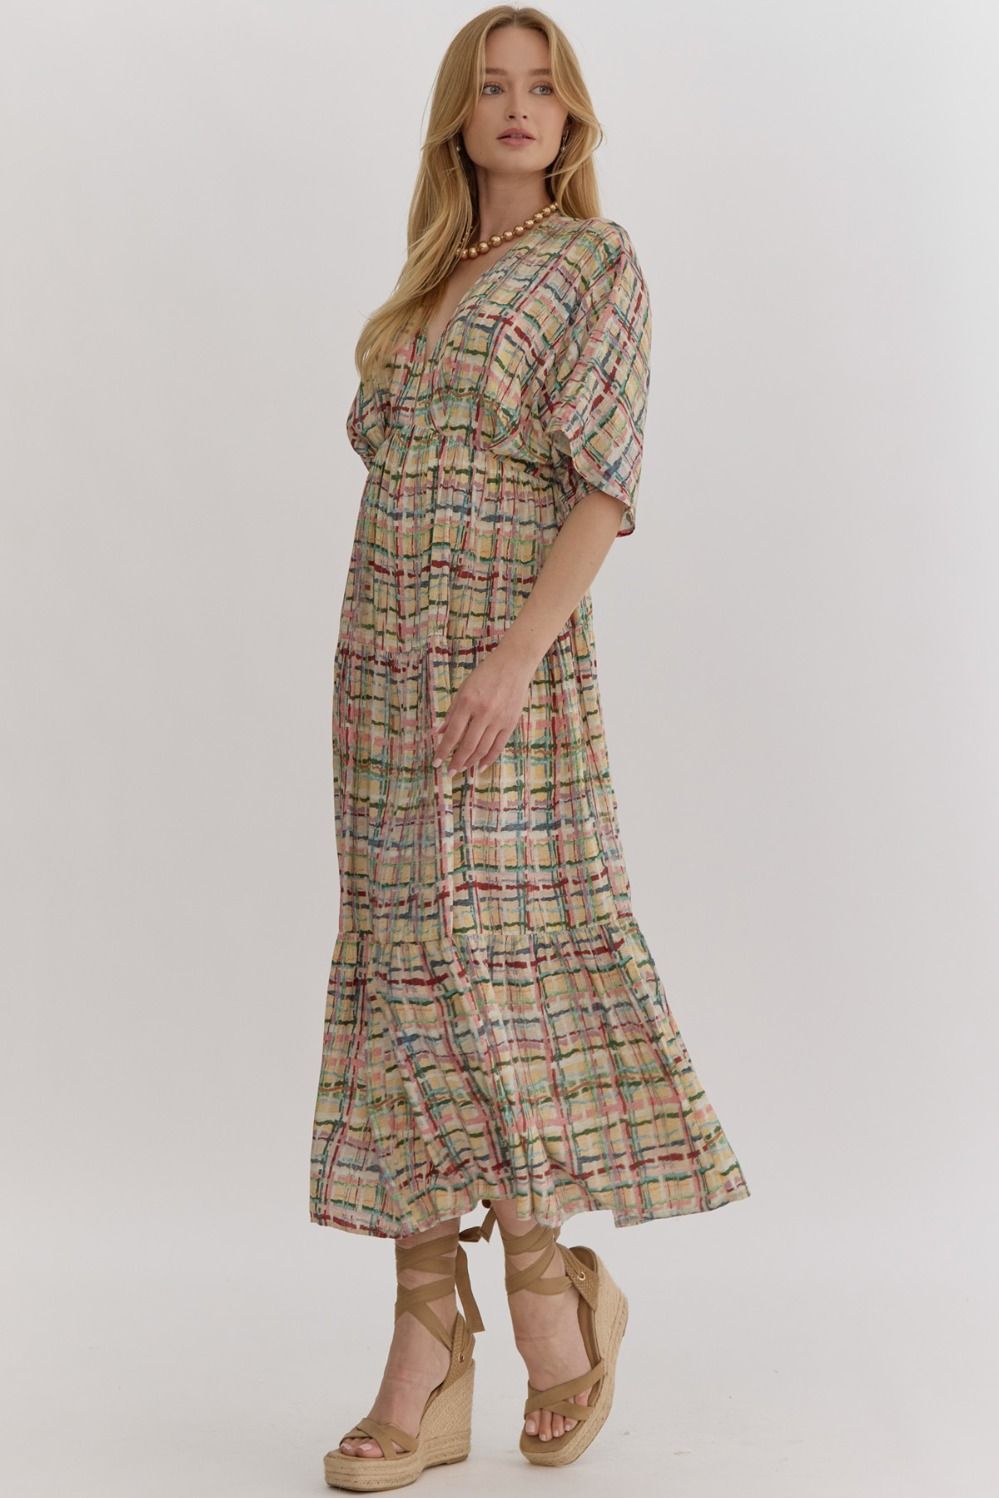 ENTRO INC Women's Dresses Multi-Color Plaid Print Deep V-Neck Midi Dress || David's Clothing